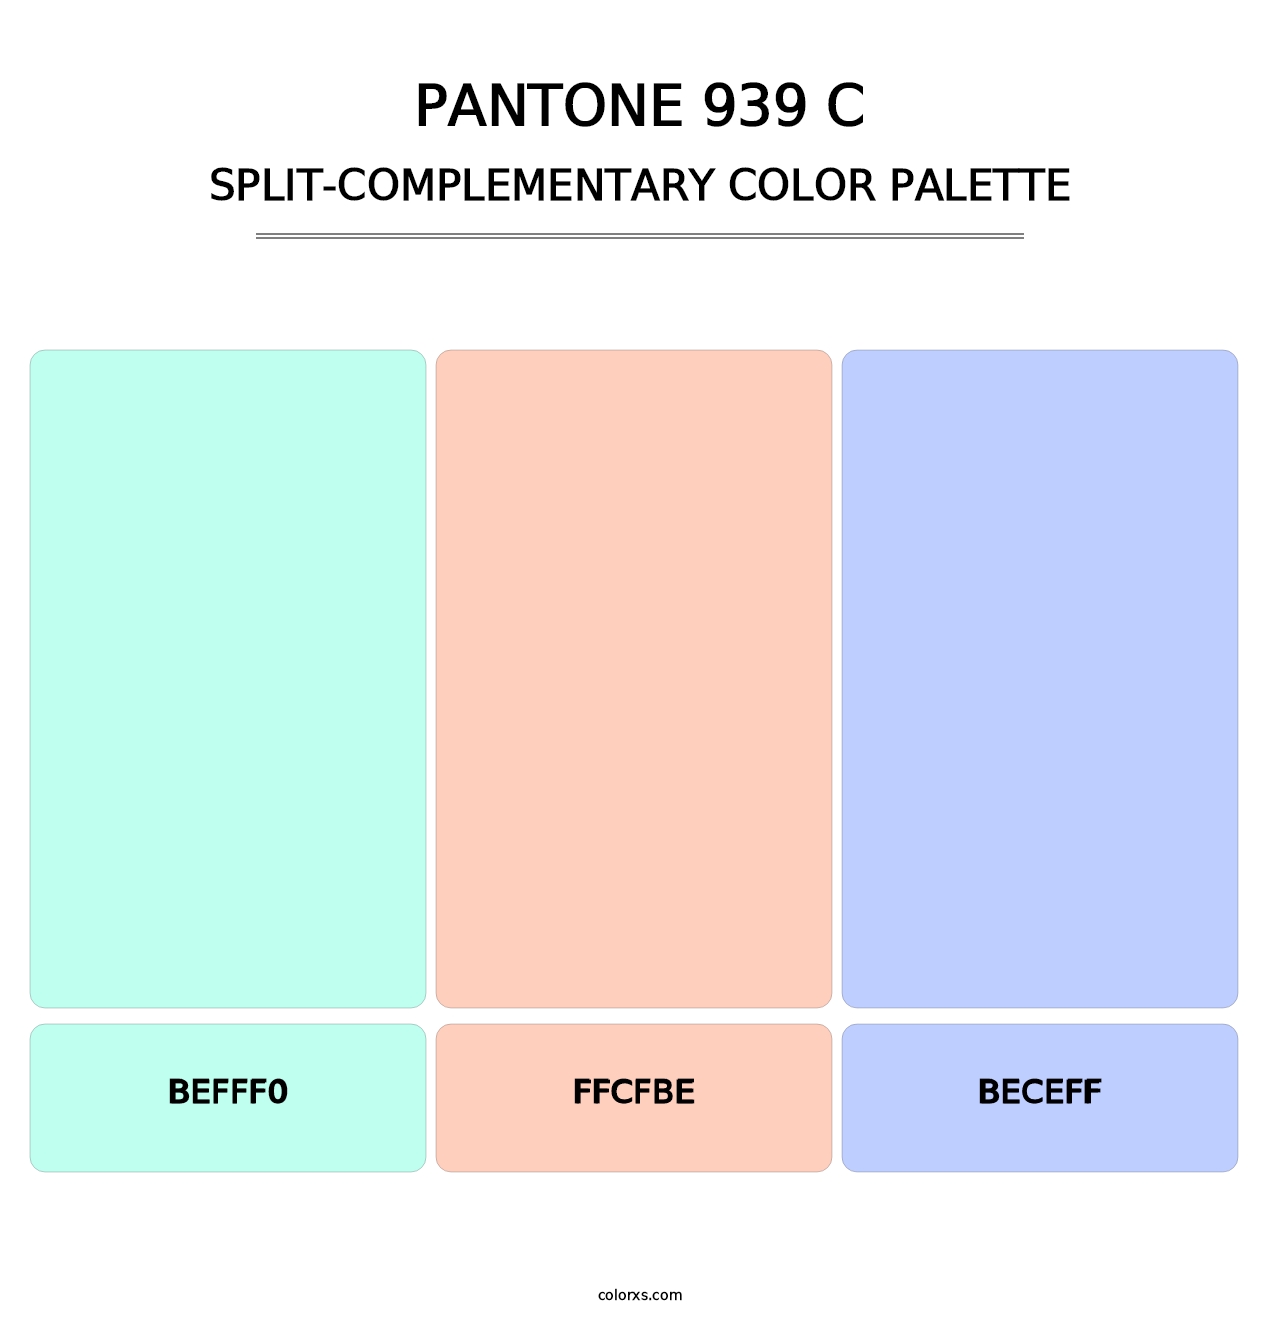 PANTONE 939 C - Split-Complementary Color Palette